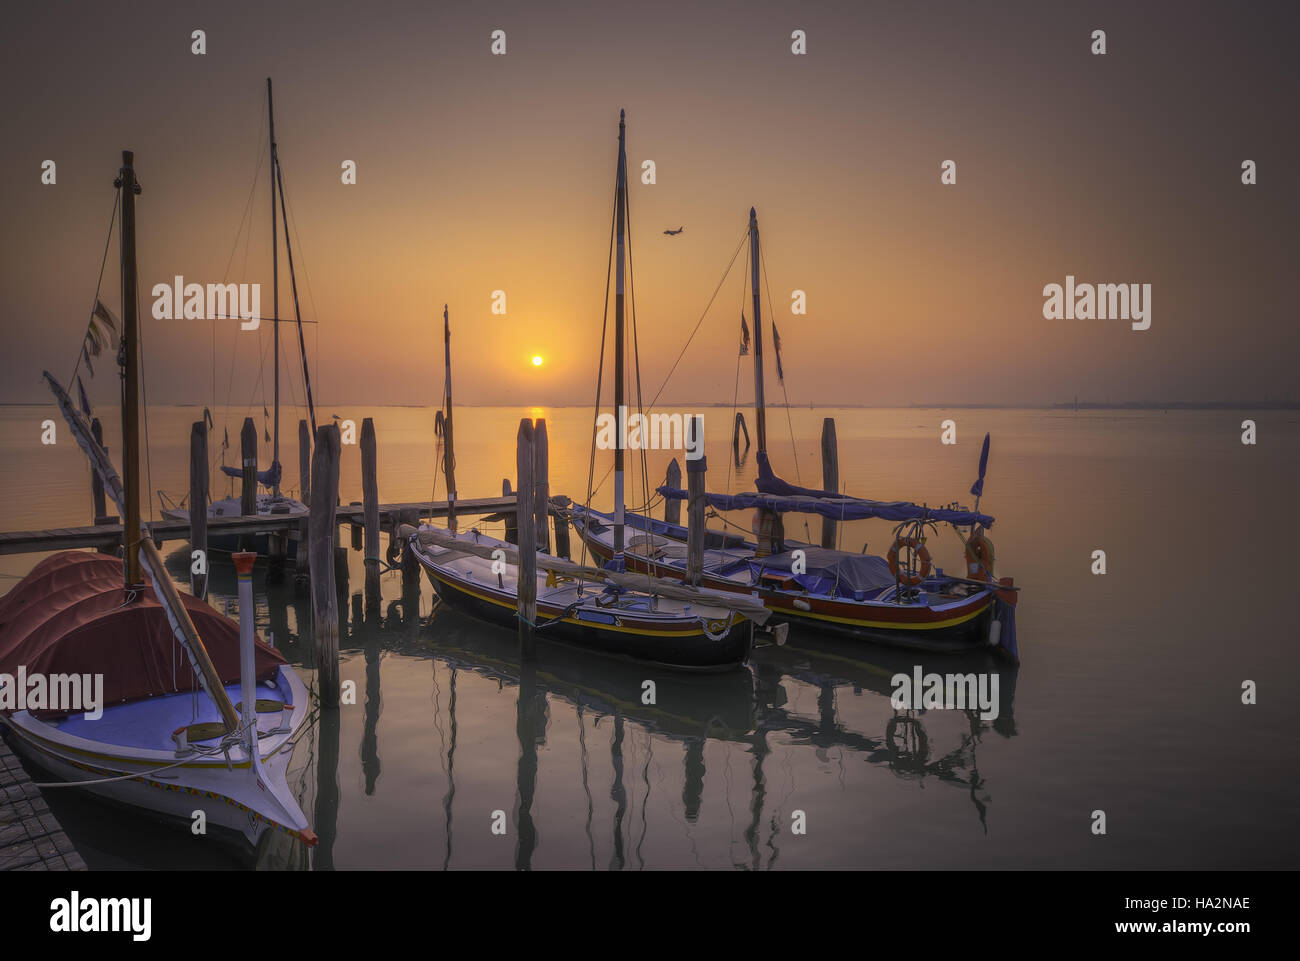 Boats moored in lagoon, Venice, Italy Stock Photo